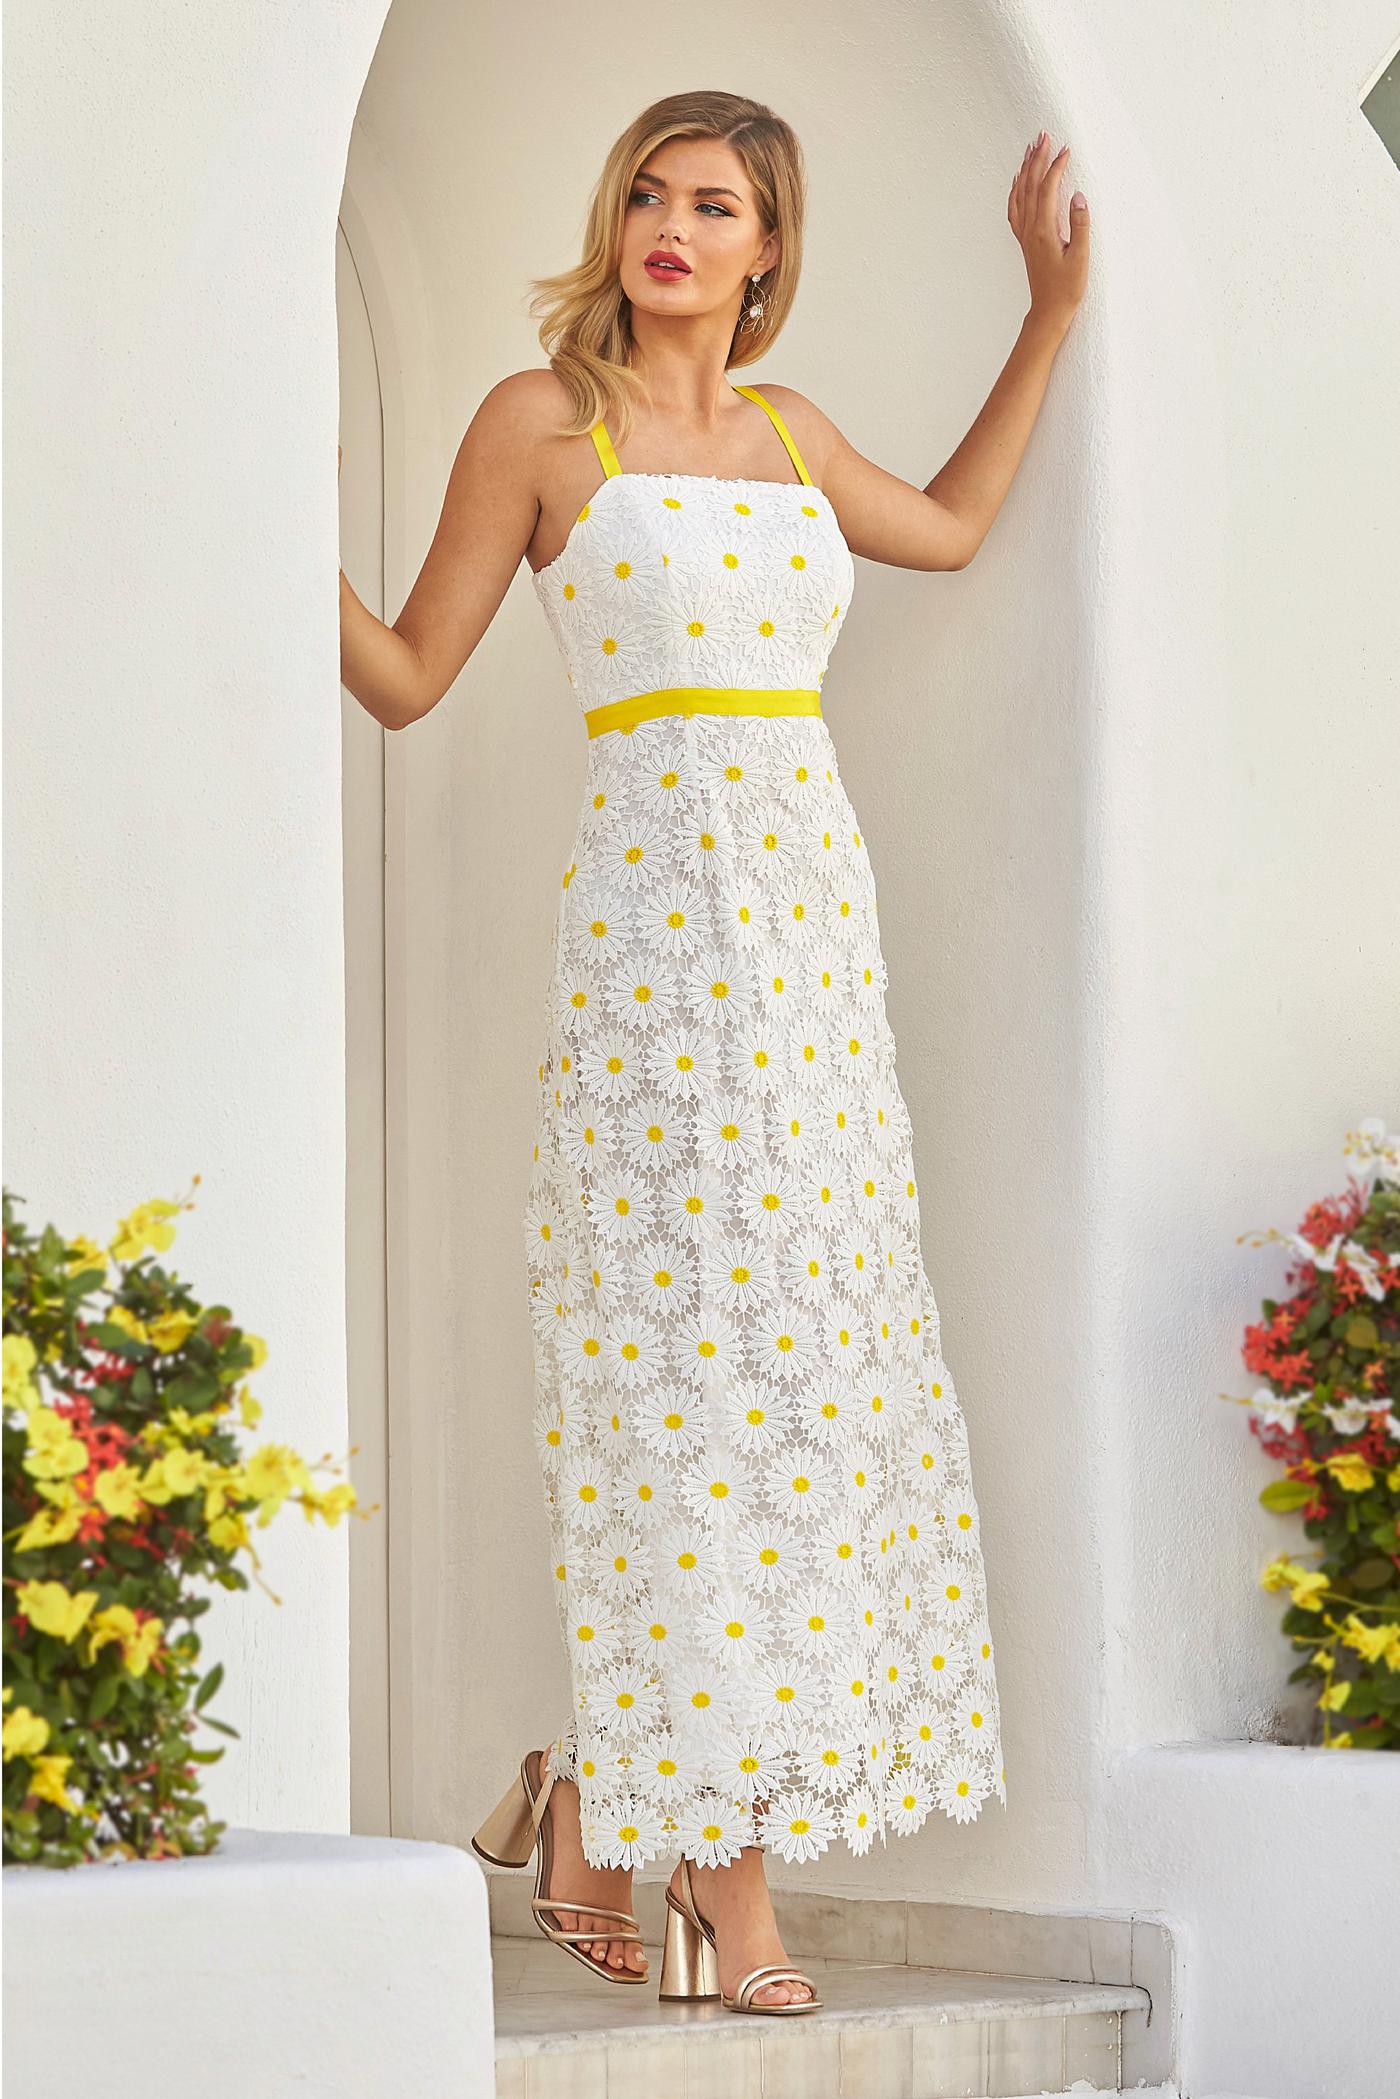 Daisy Lace Maxi Dress White/Yellow